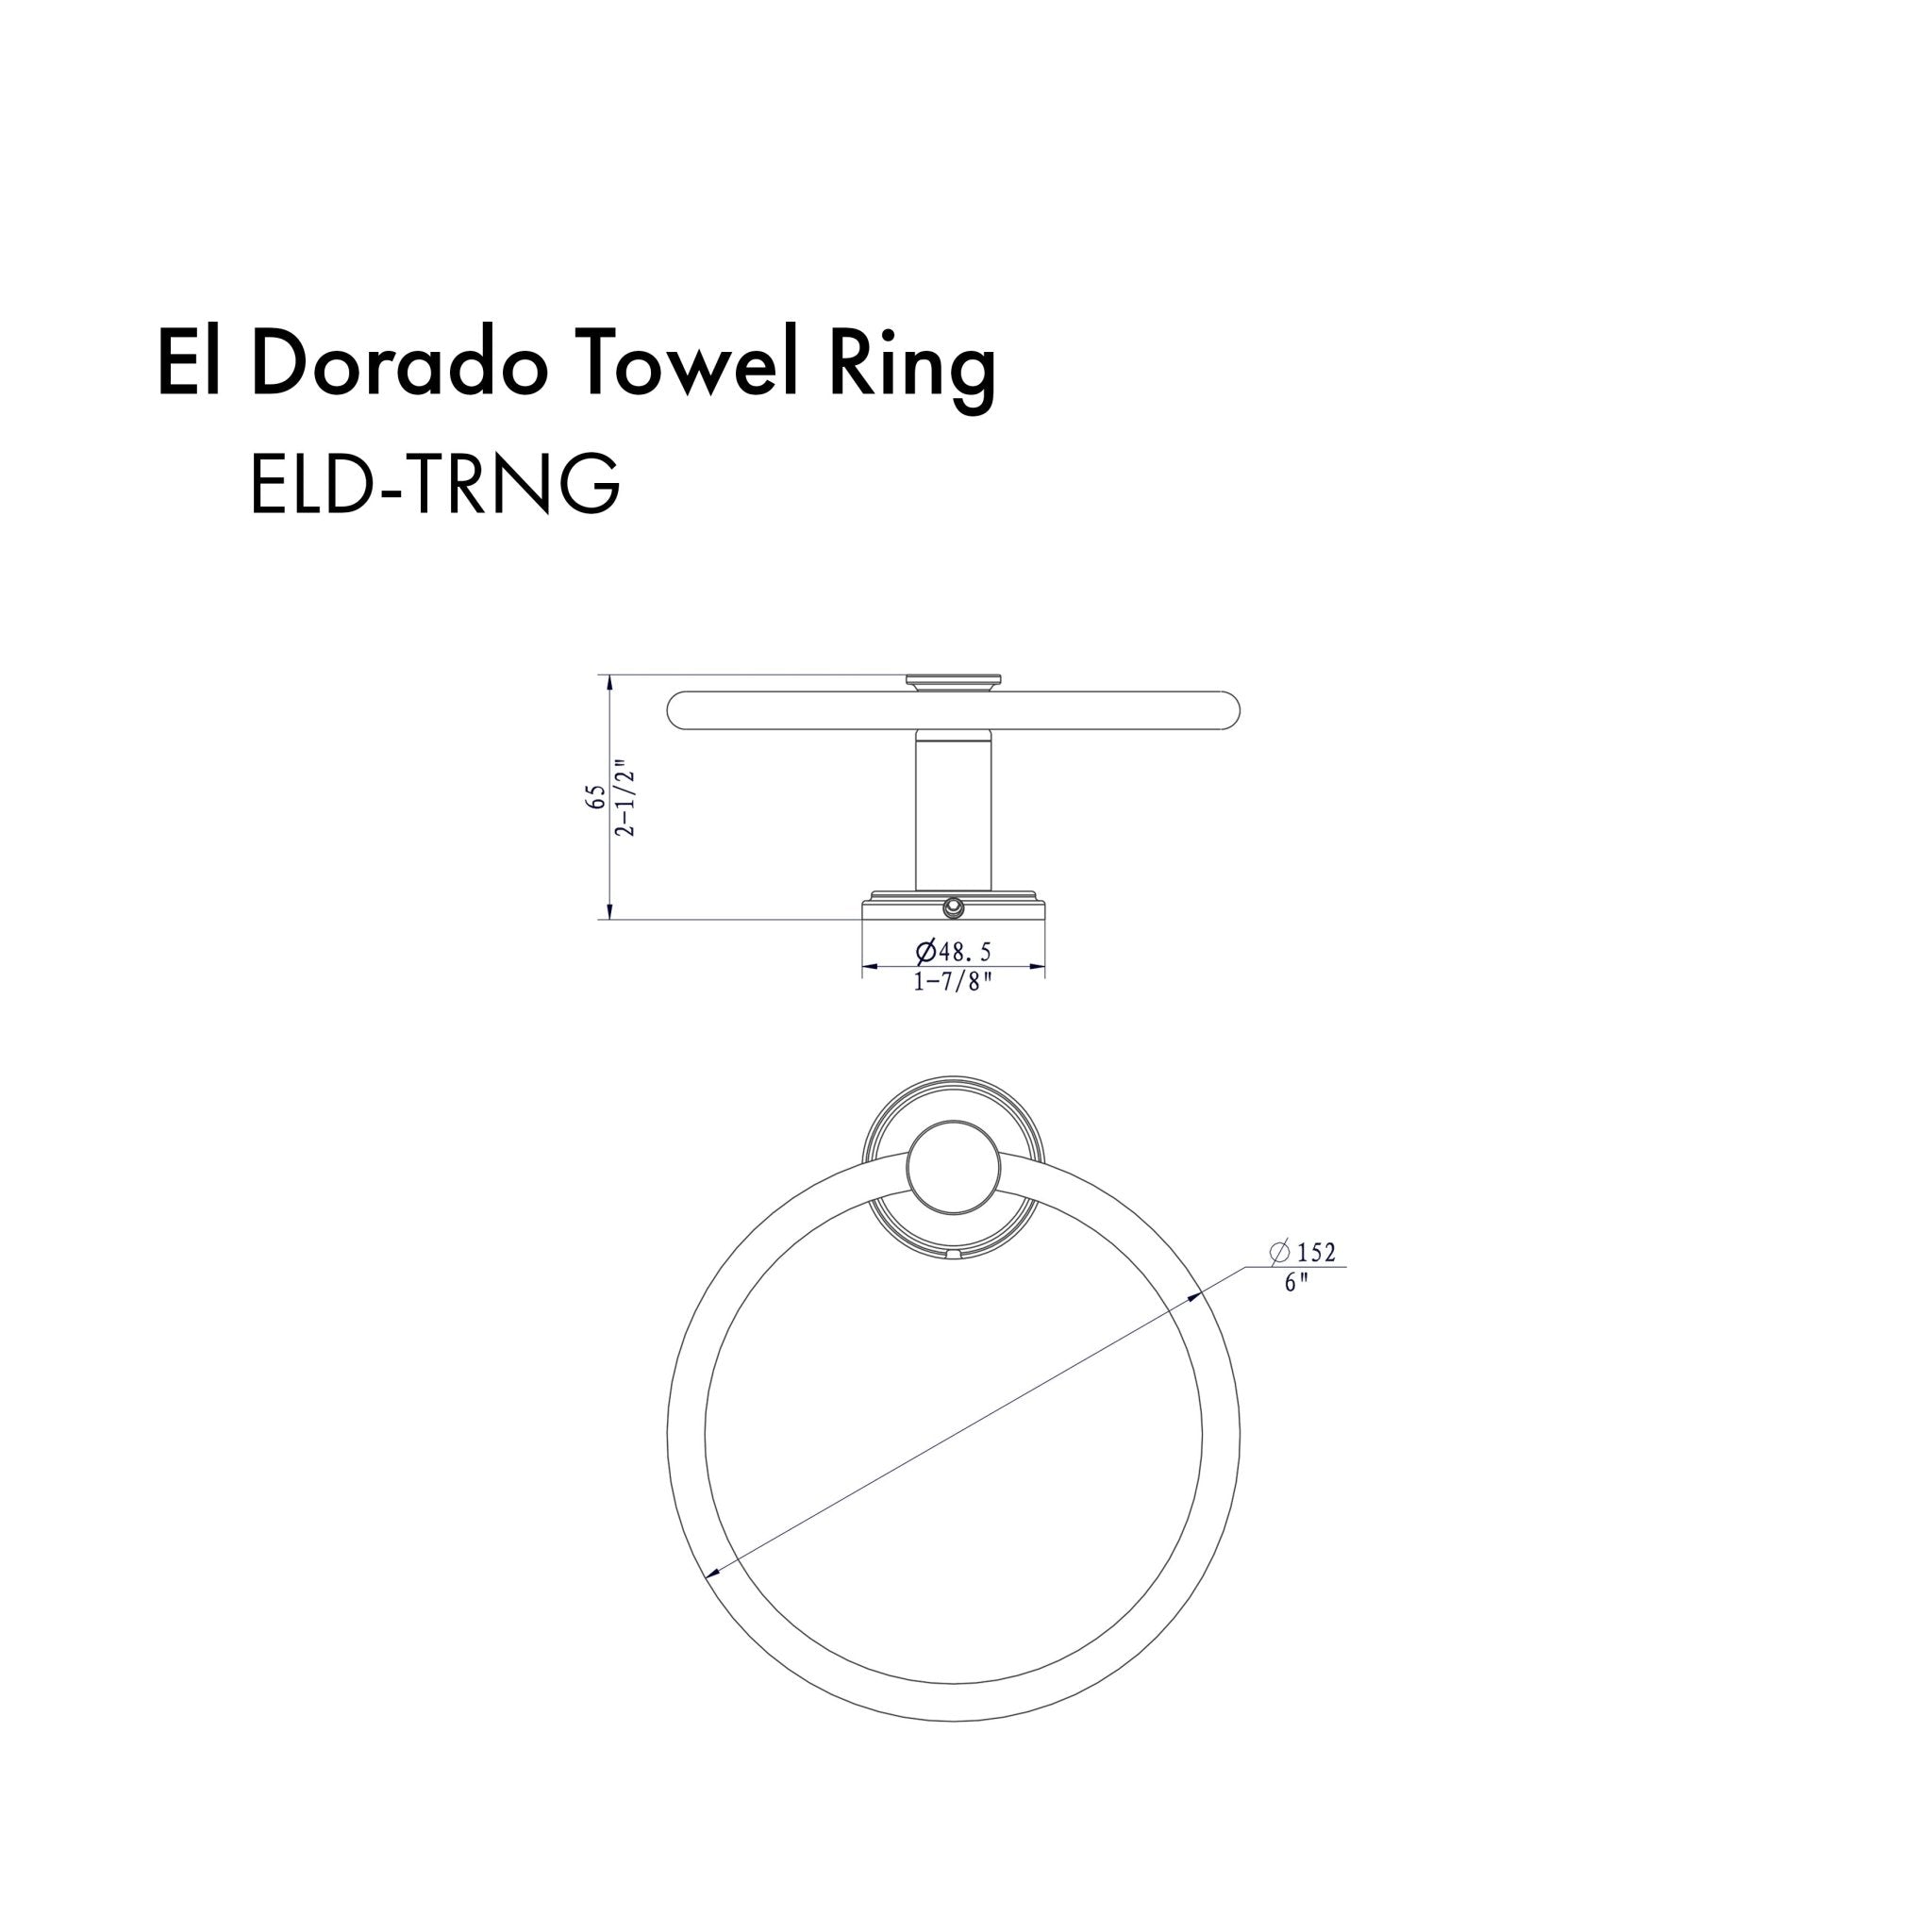 ZLINE El Dorado Towel Ring with color options (ELD-TRNG) dimensional diagram